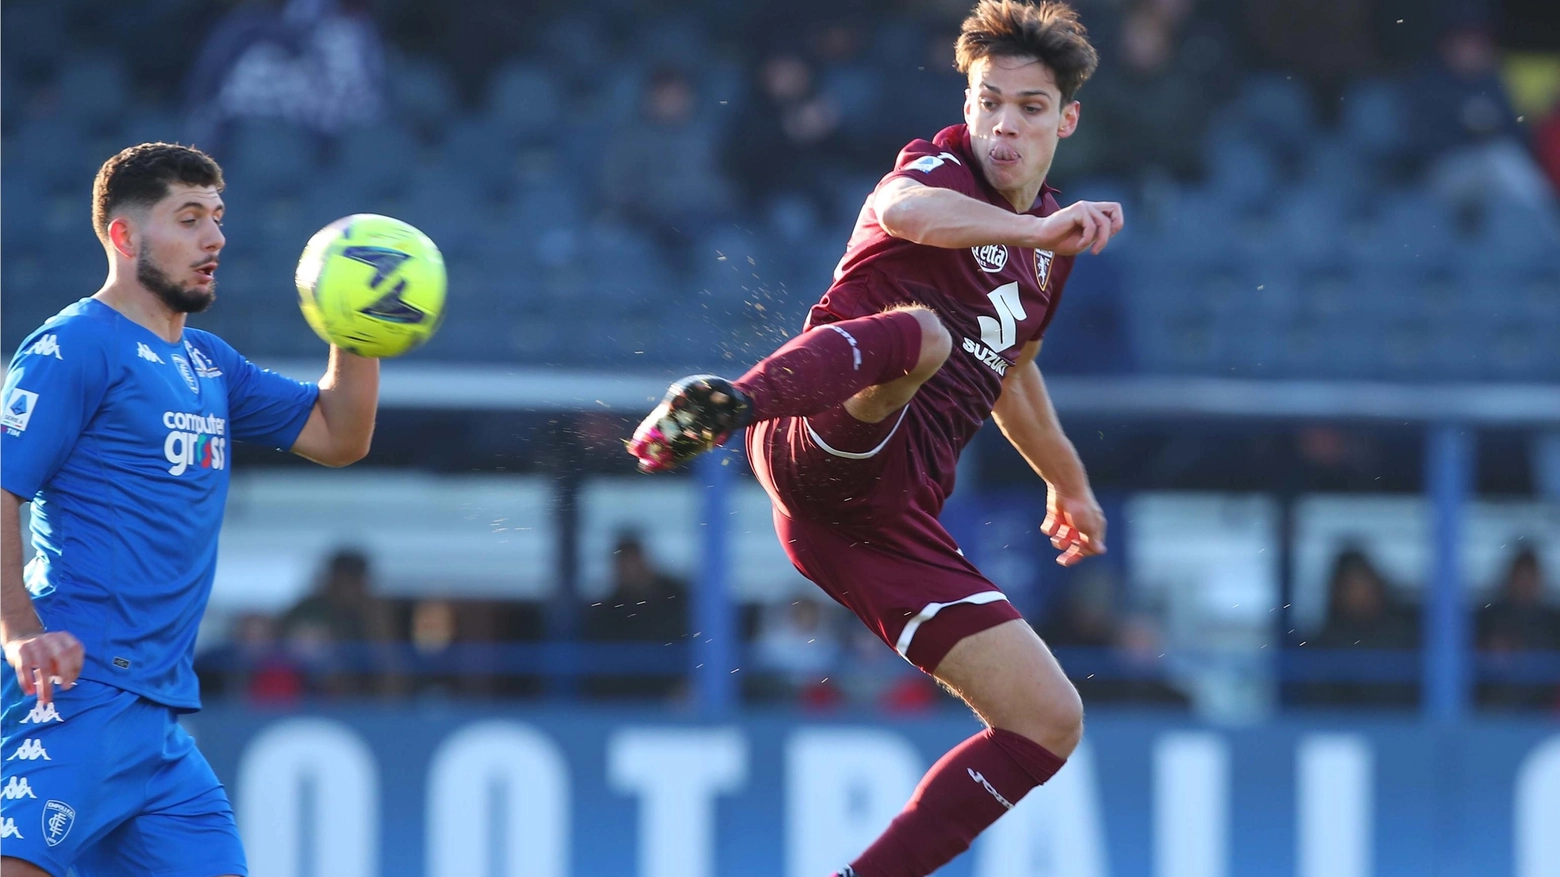 Il mediano del Torino ha superato anche la concorrenza interna di Maxime Lopez. Rebus Folorunsho, che dopo il prestito al Bari potrebbe restare